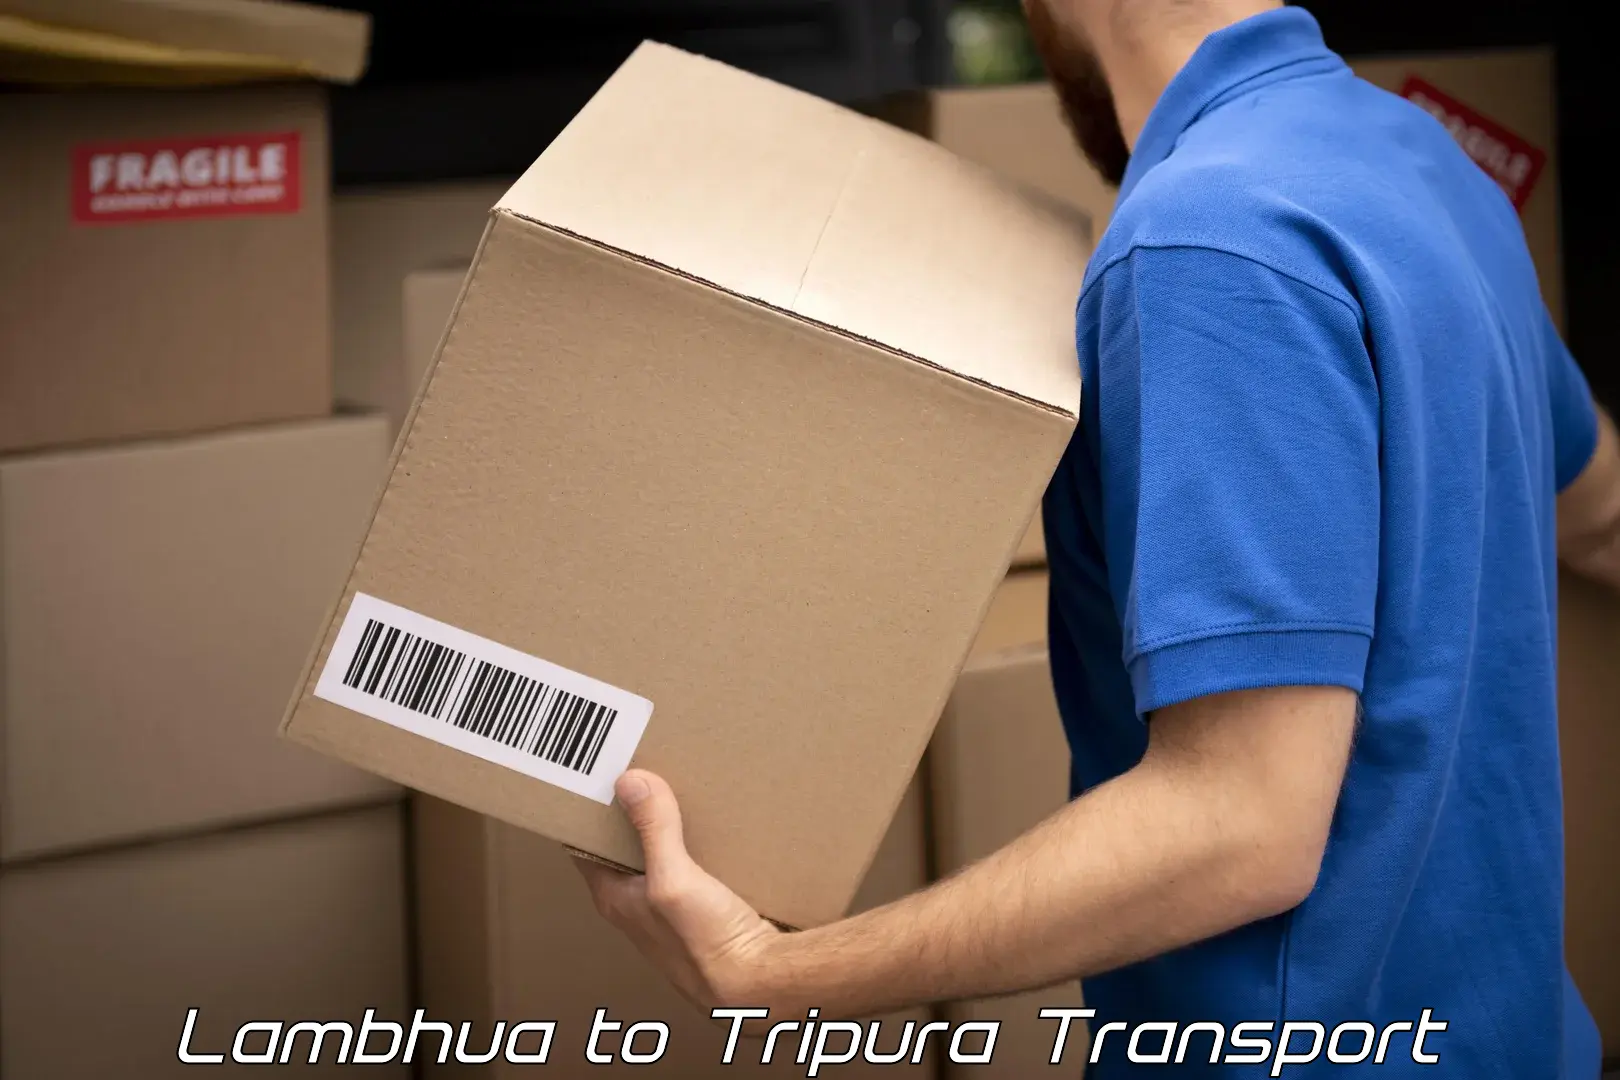 Road transport online services Lambhua to Udaipur Tripura